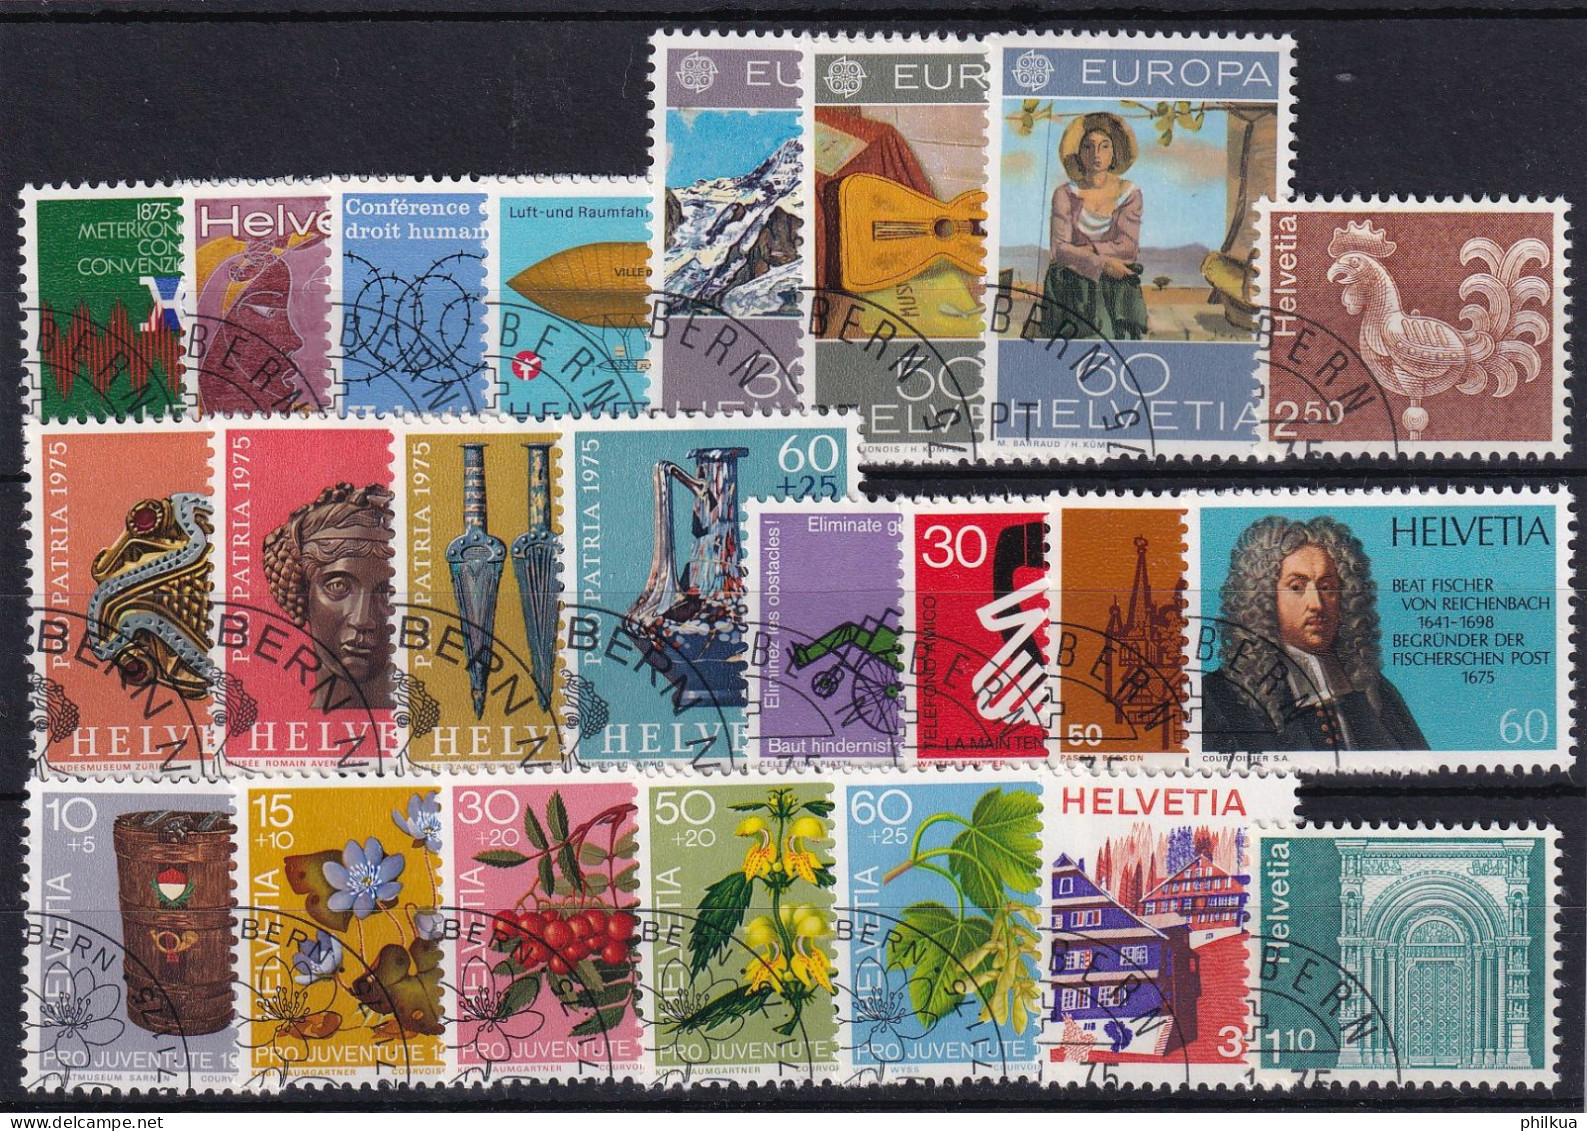 Jahresserie 1975 Schweiz, Michel 1046 - 1068 Alle Mit Einheitlichem ET-Eckstempel - Collections